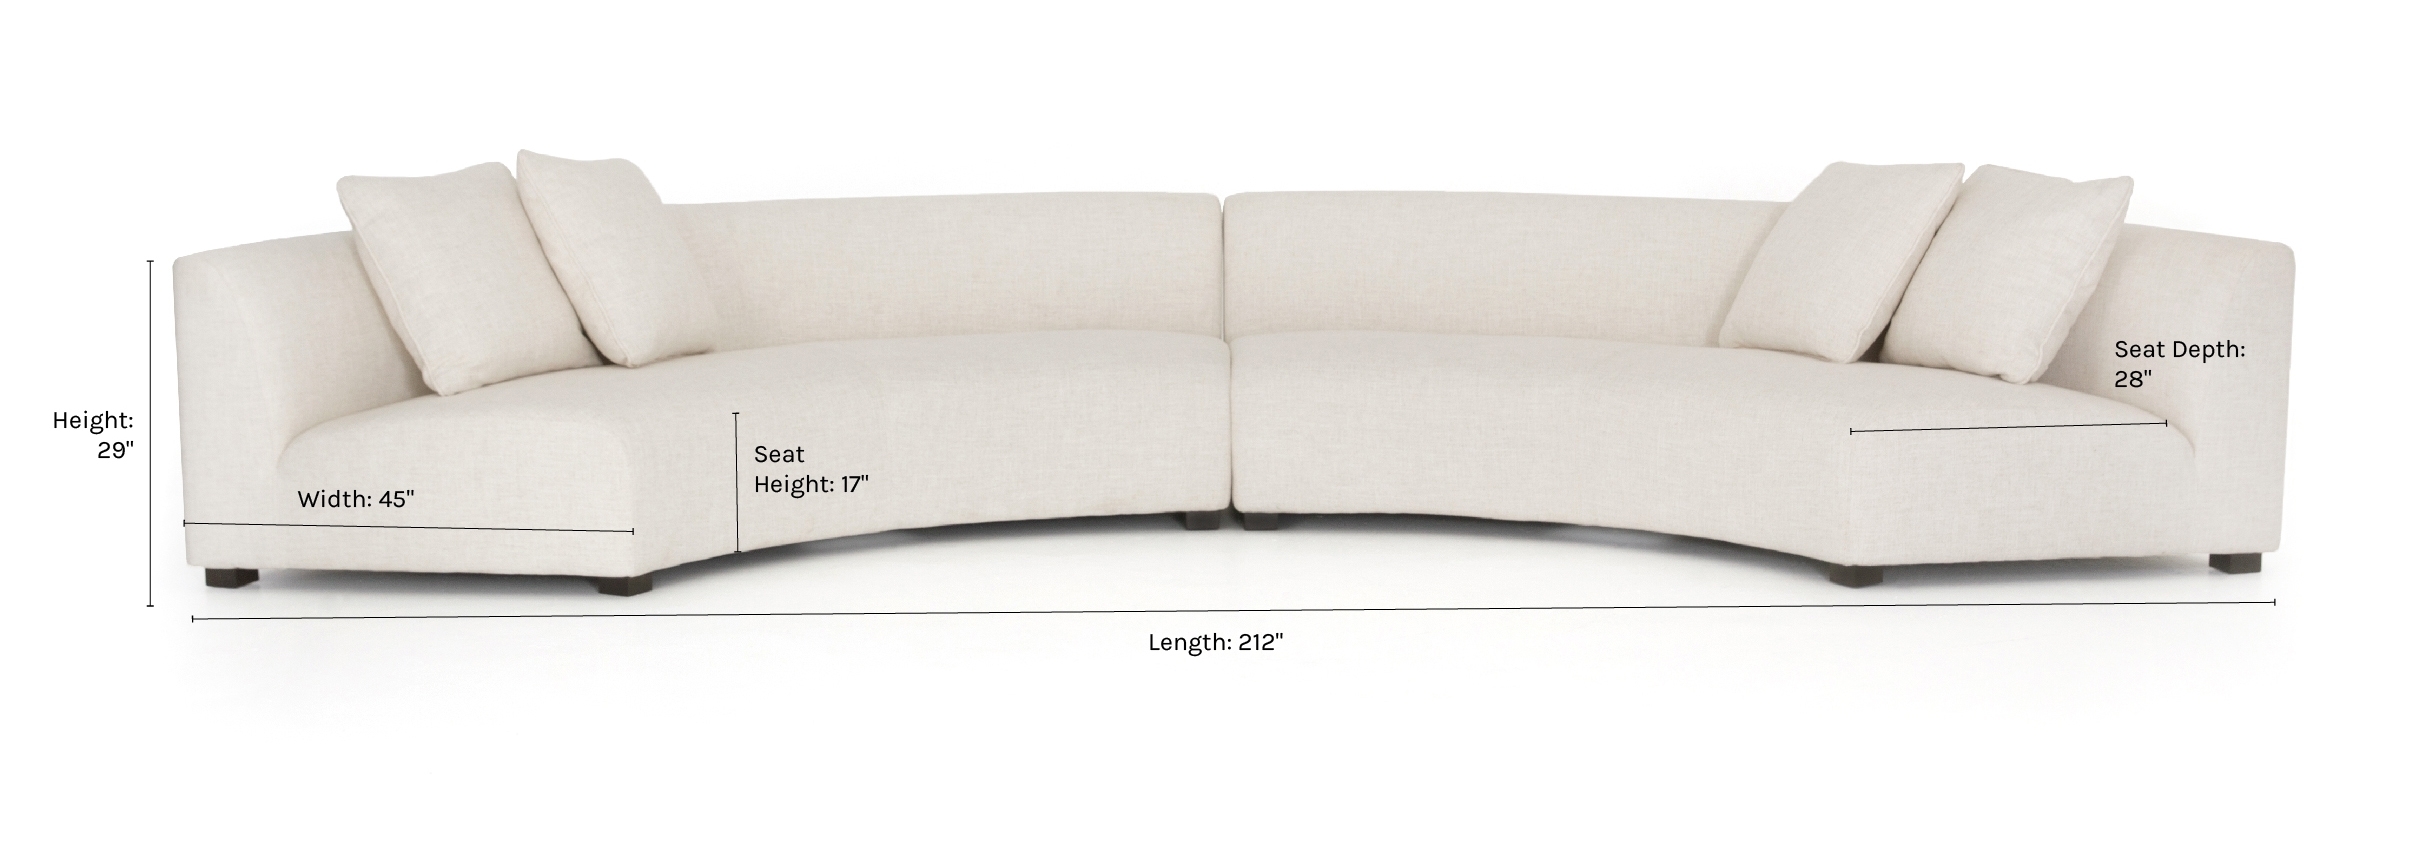 Saban 2-Piece Curved Sectional Sofa - Image 8